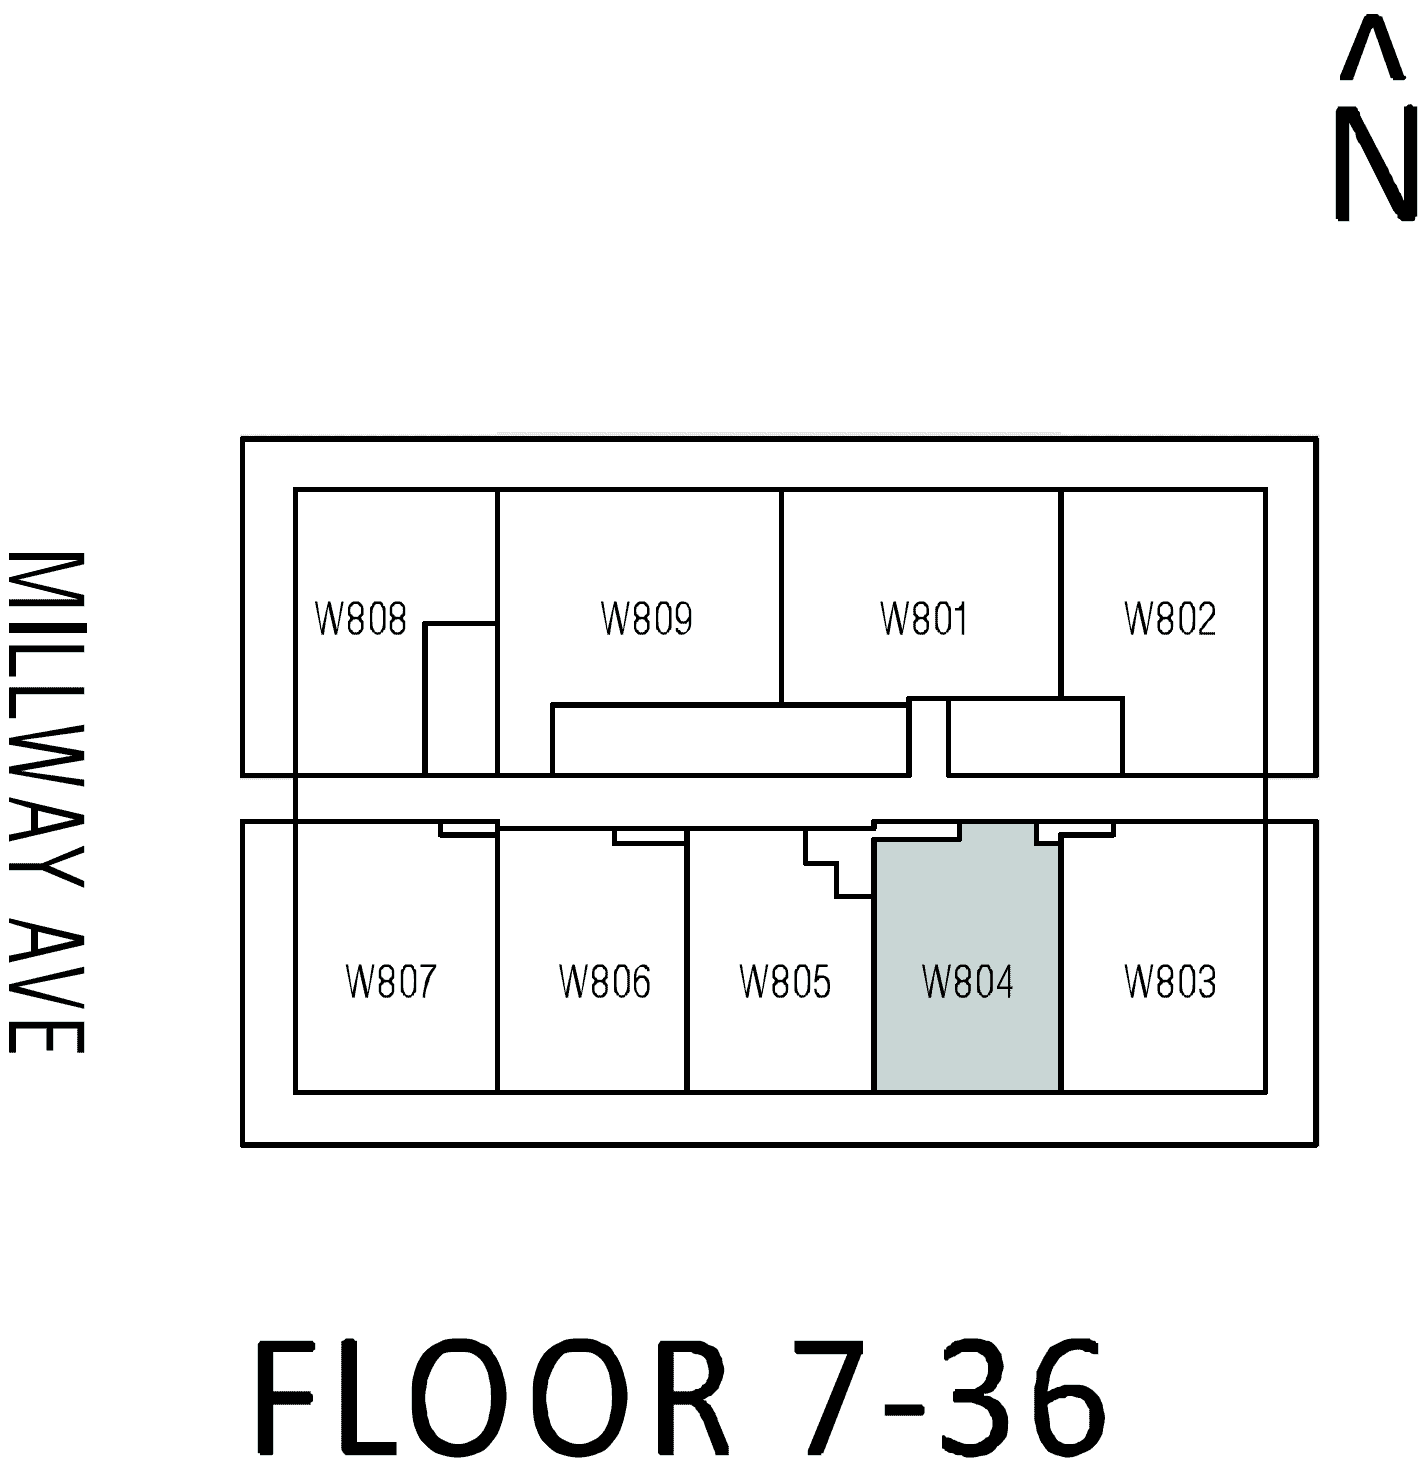 W04 floor plan